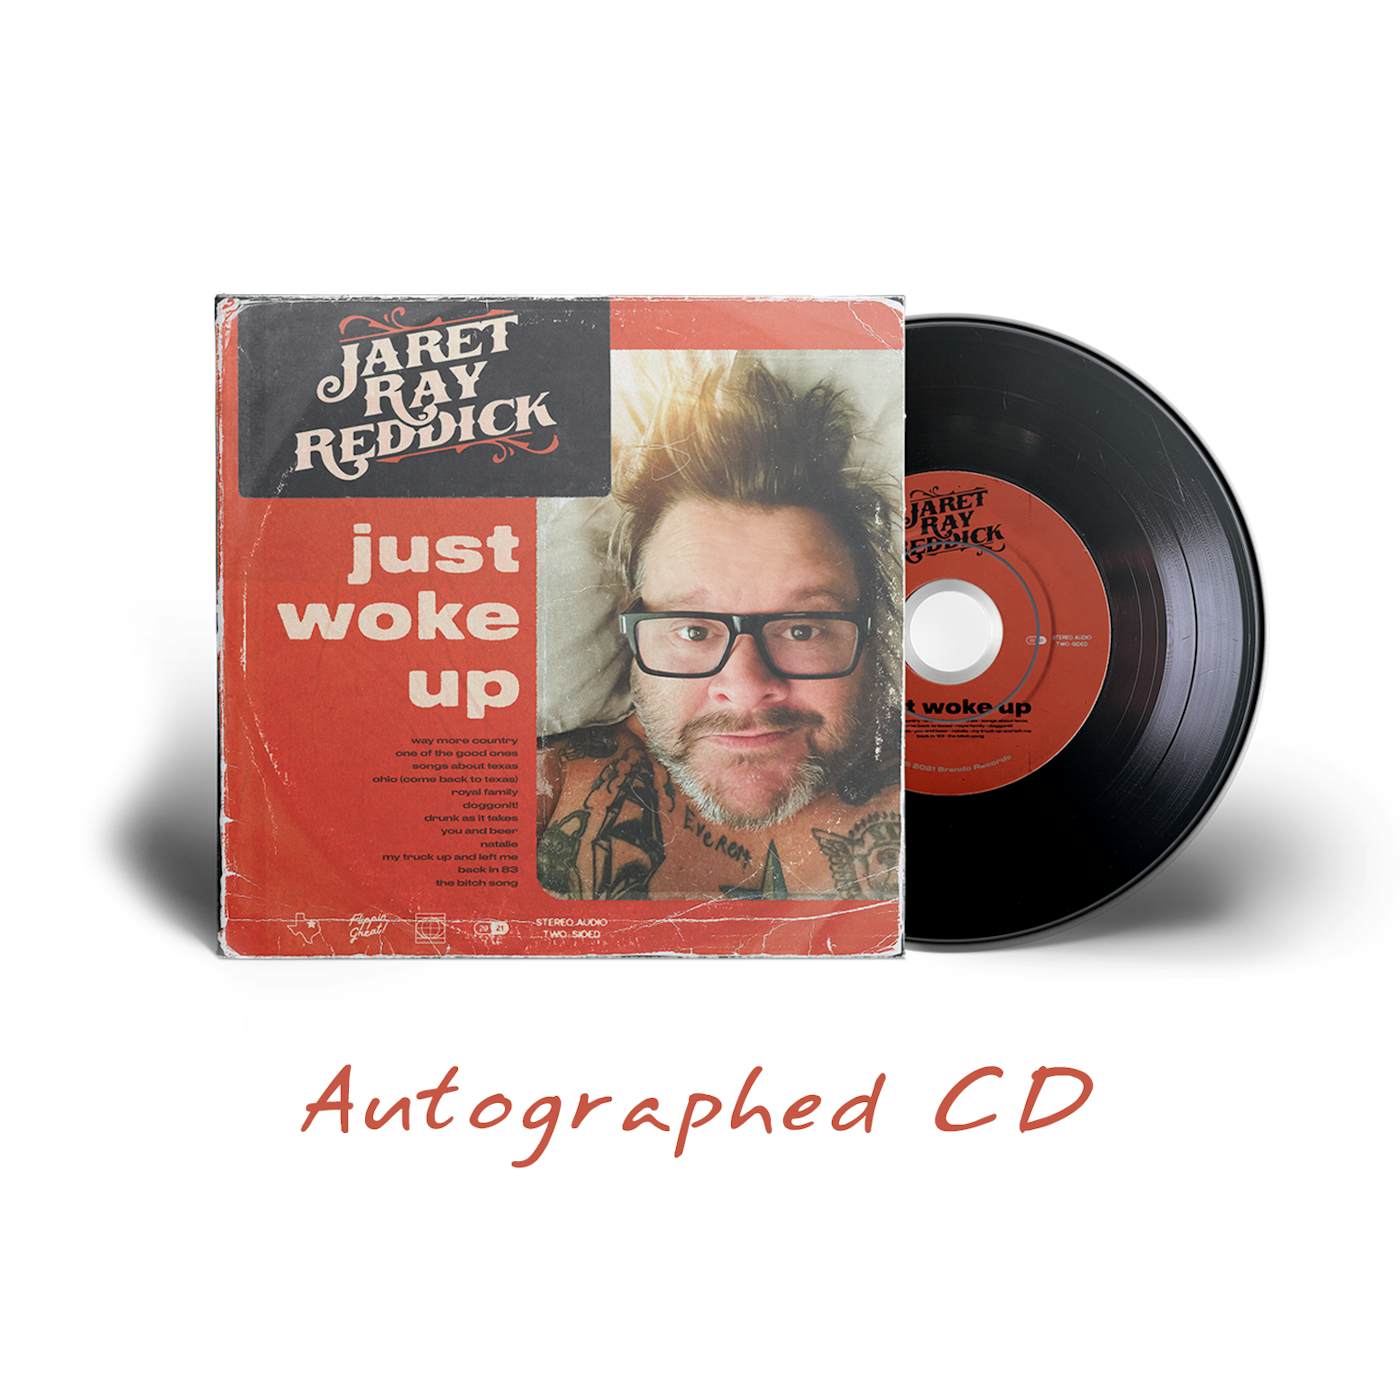 Jaret Reddick Jaret Ray Reddick - Just Woke Up Autographed CD